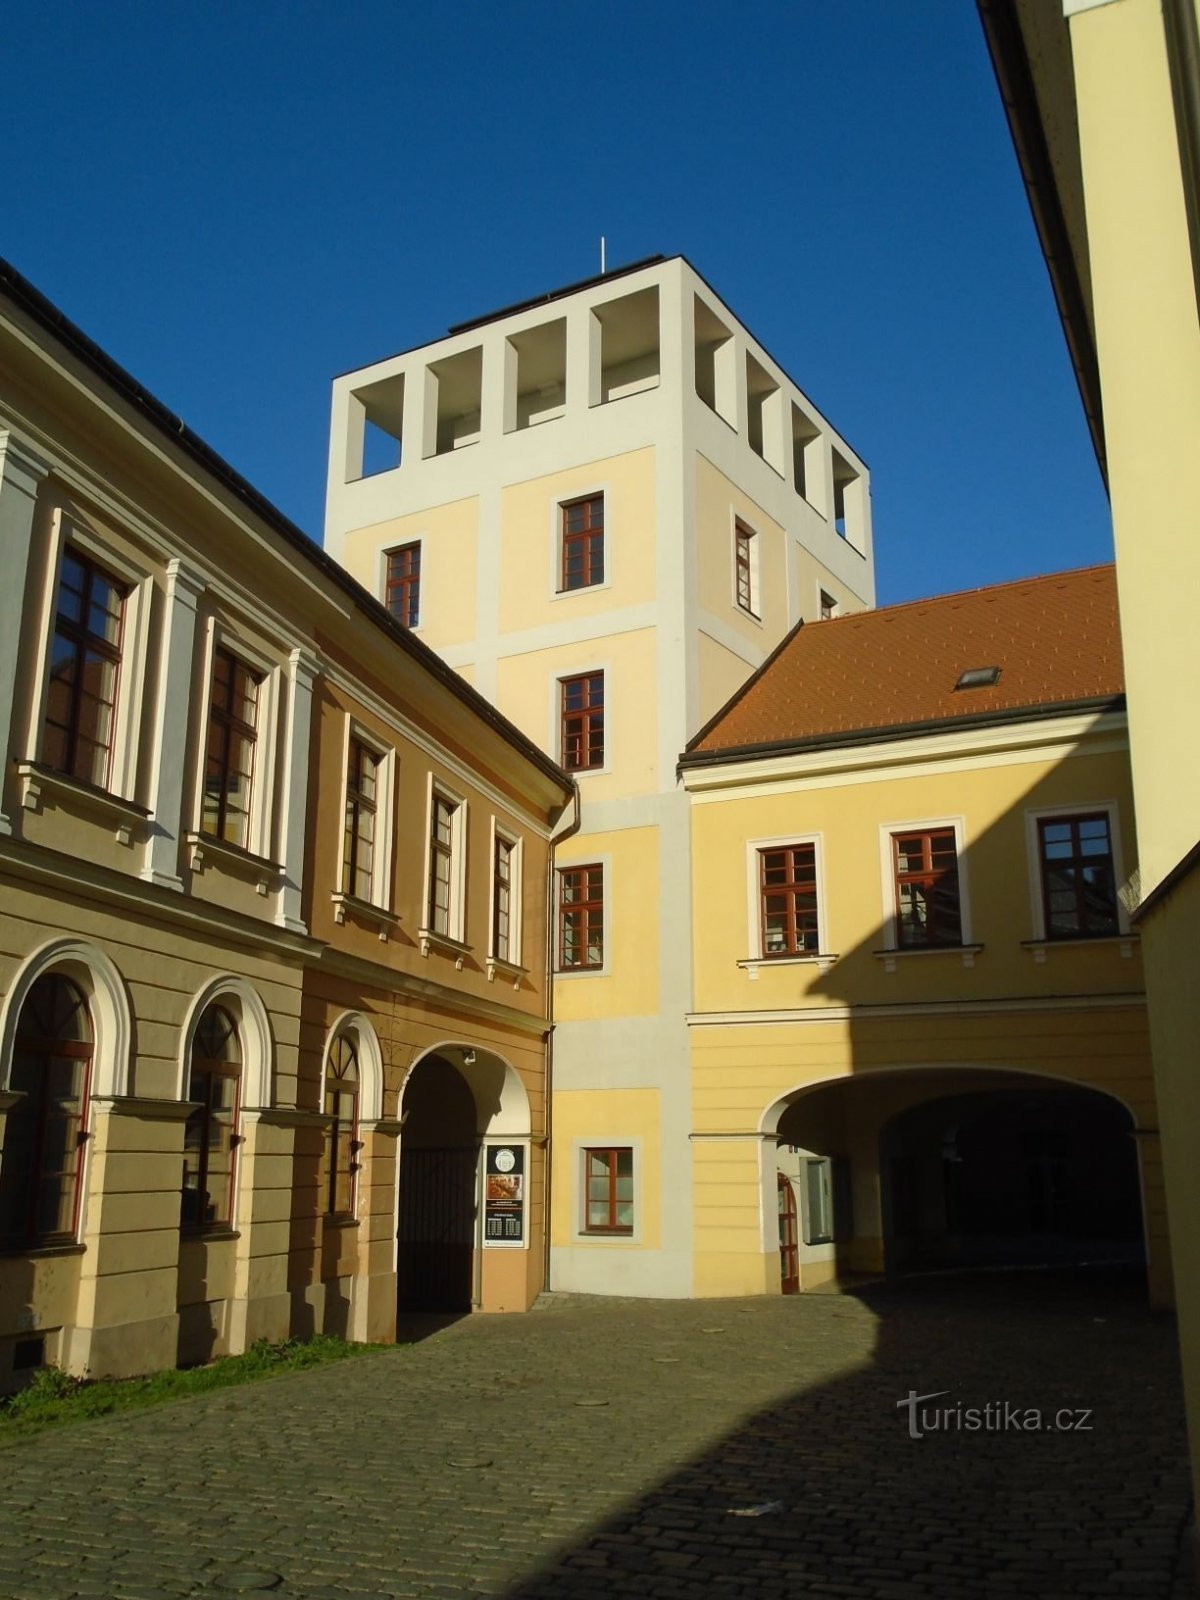 L'ancien château d'eau de Kozinka (Hradec Králové, 22.4.2019/XNUMX/XNUMX)